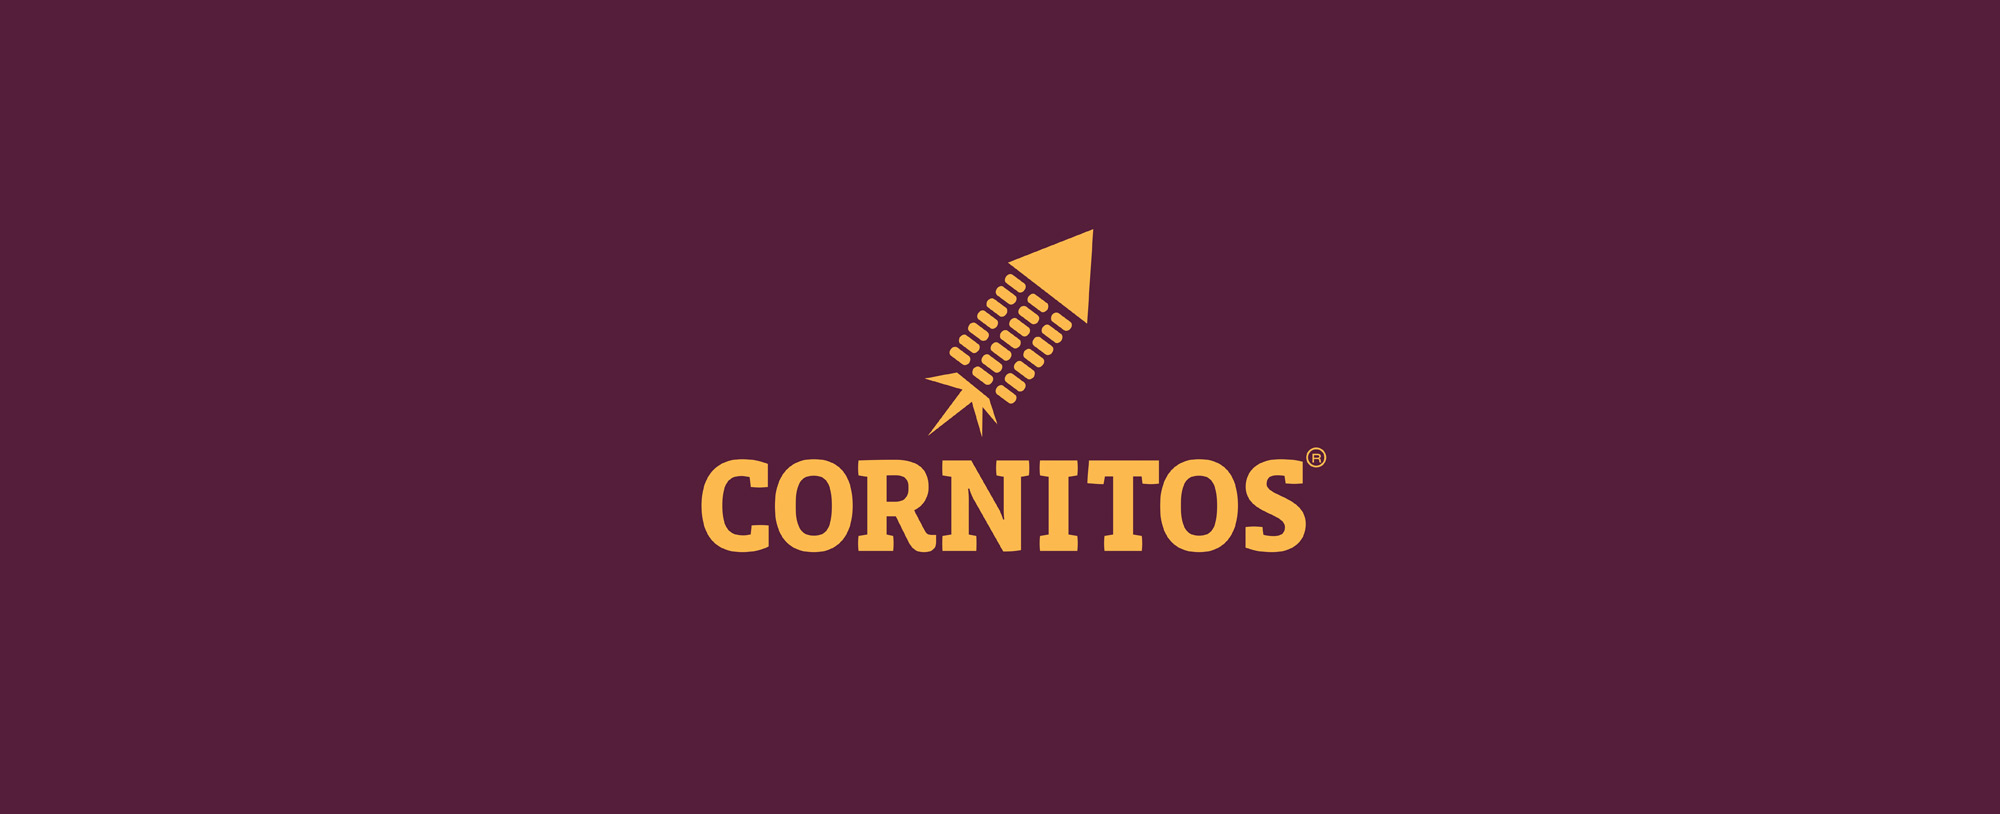 cornitos-logo